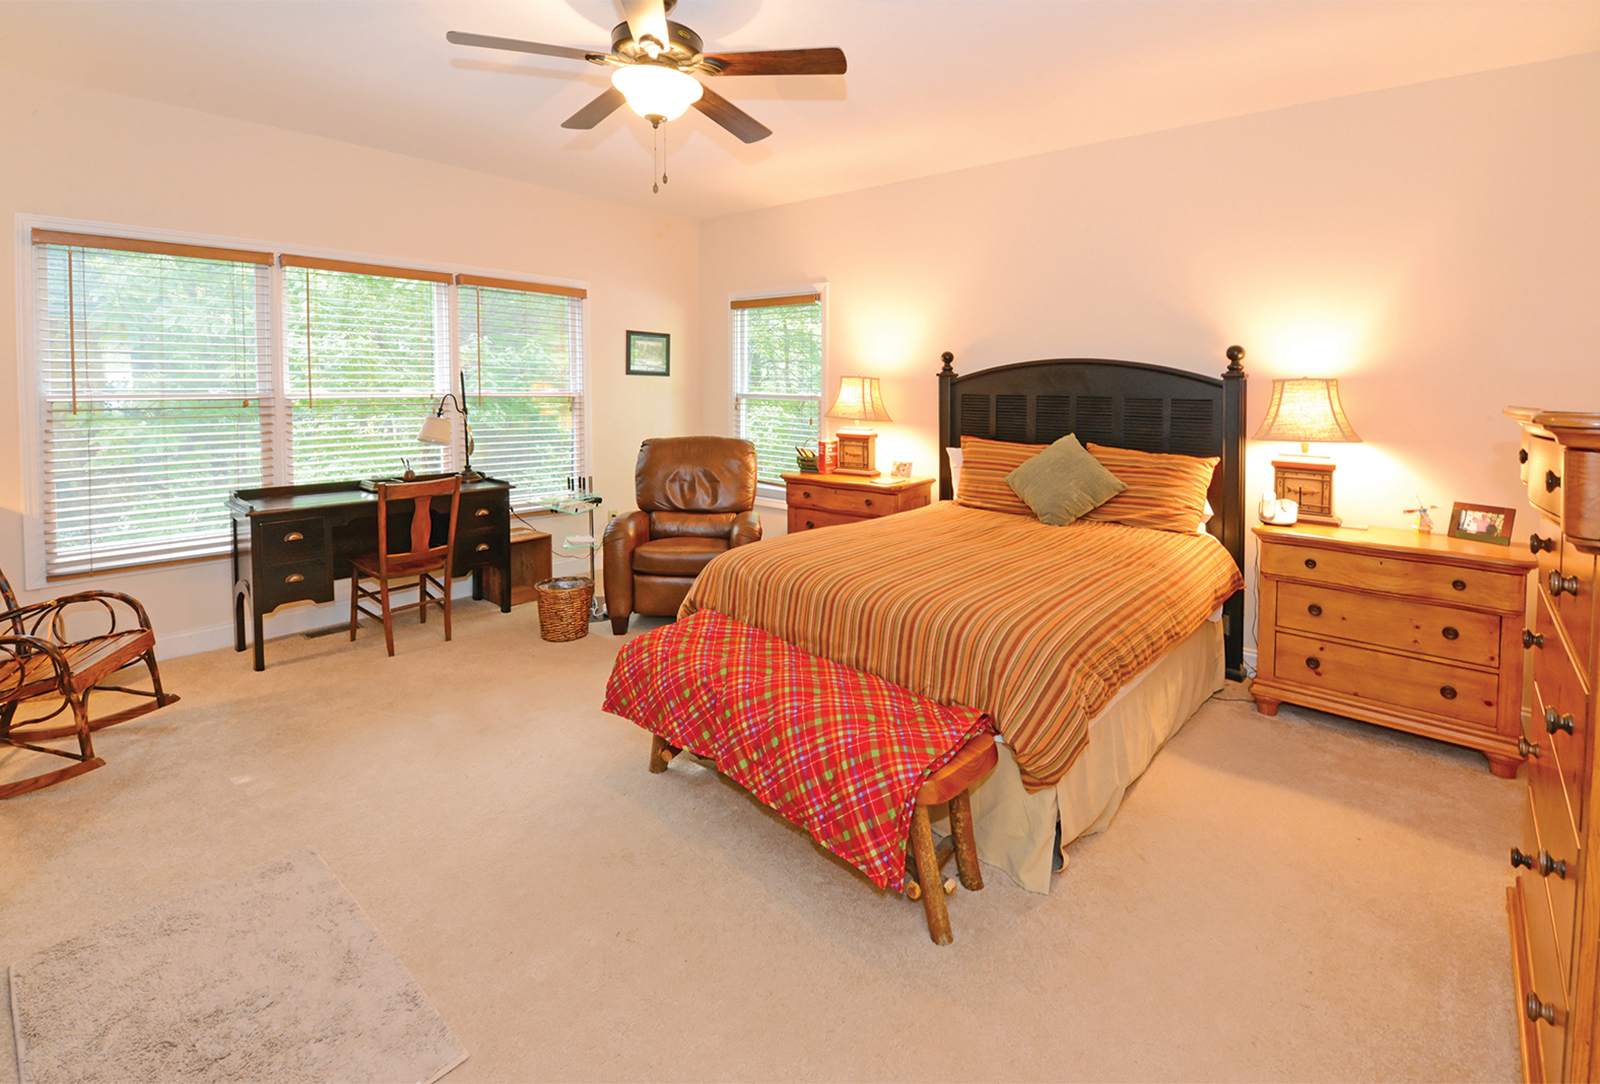 Home for sale, bedroom, Highlands NC